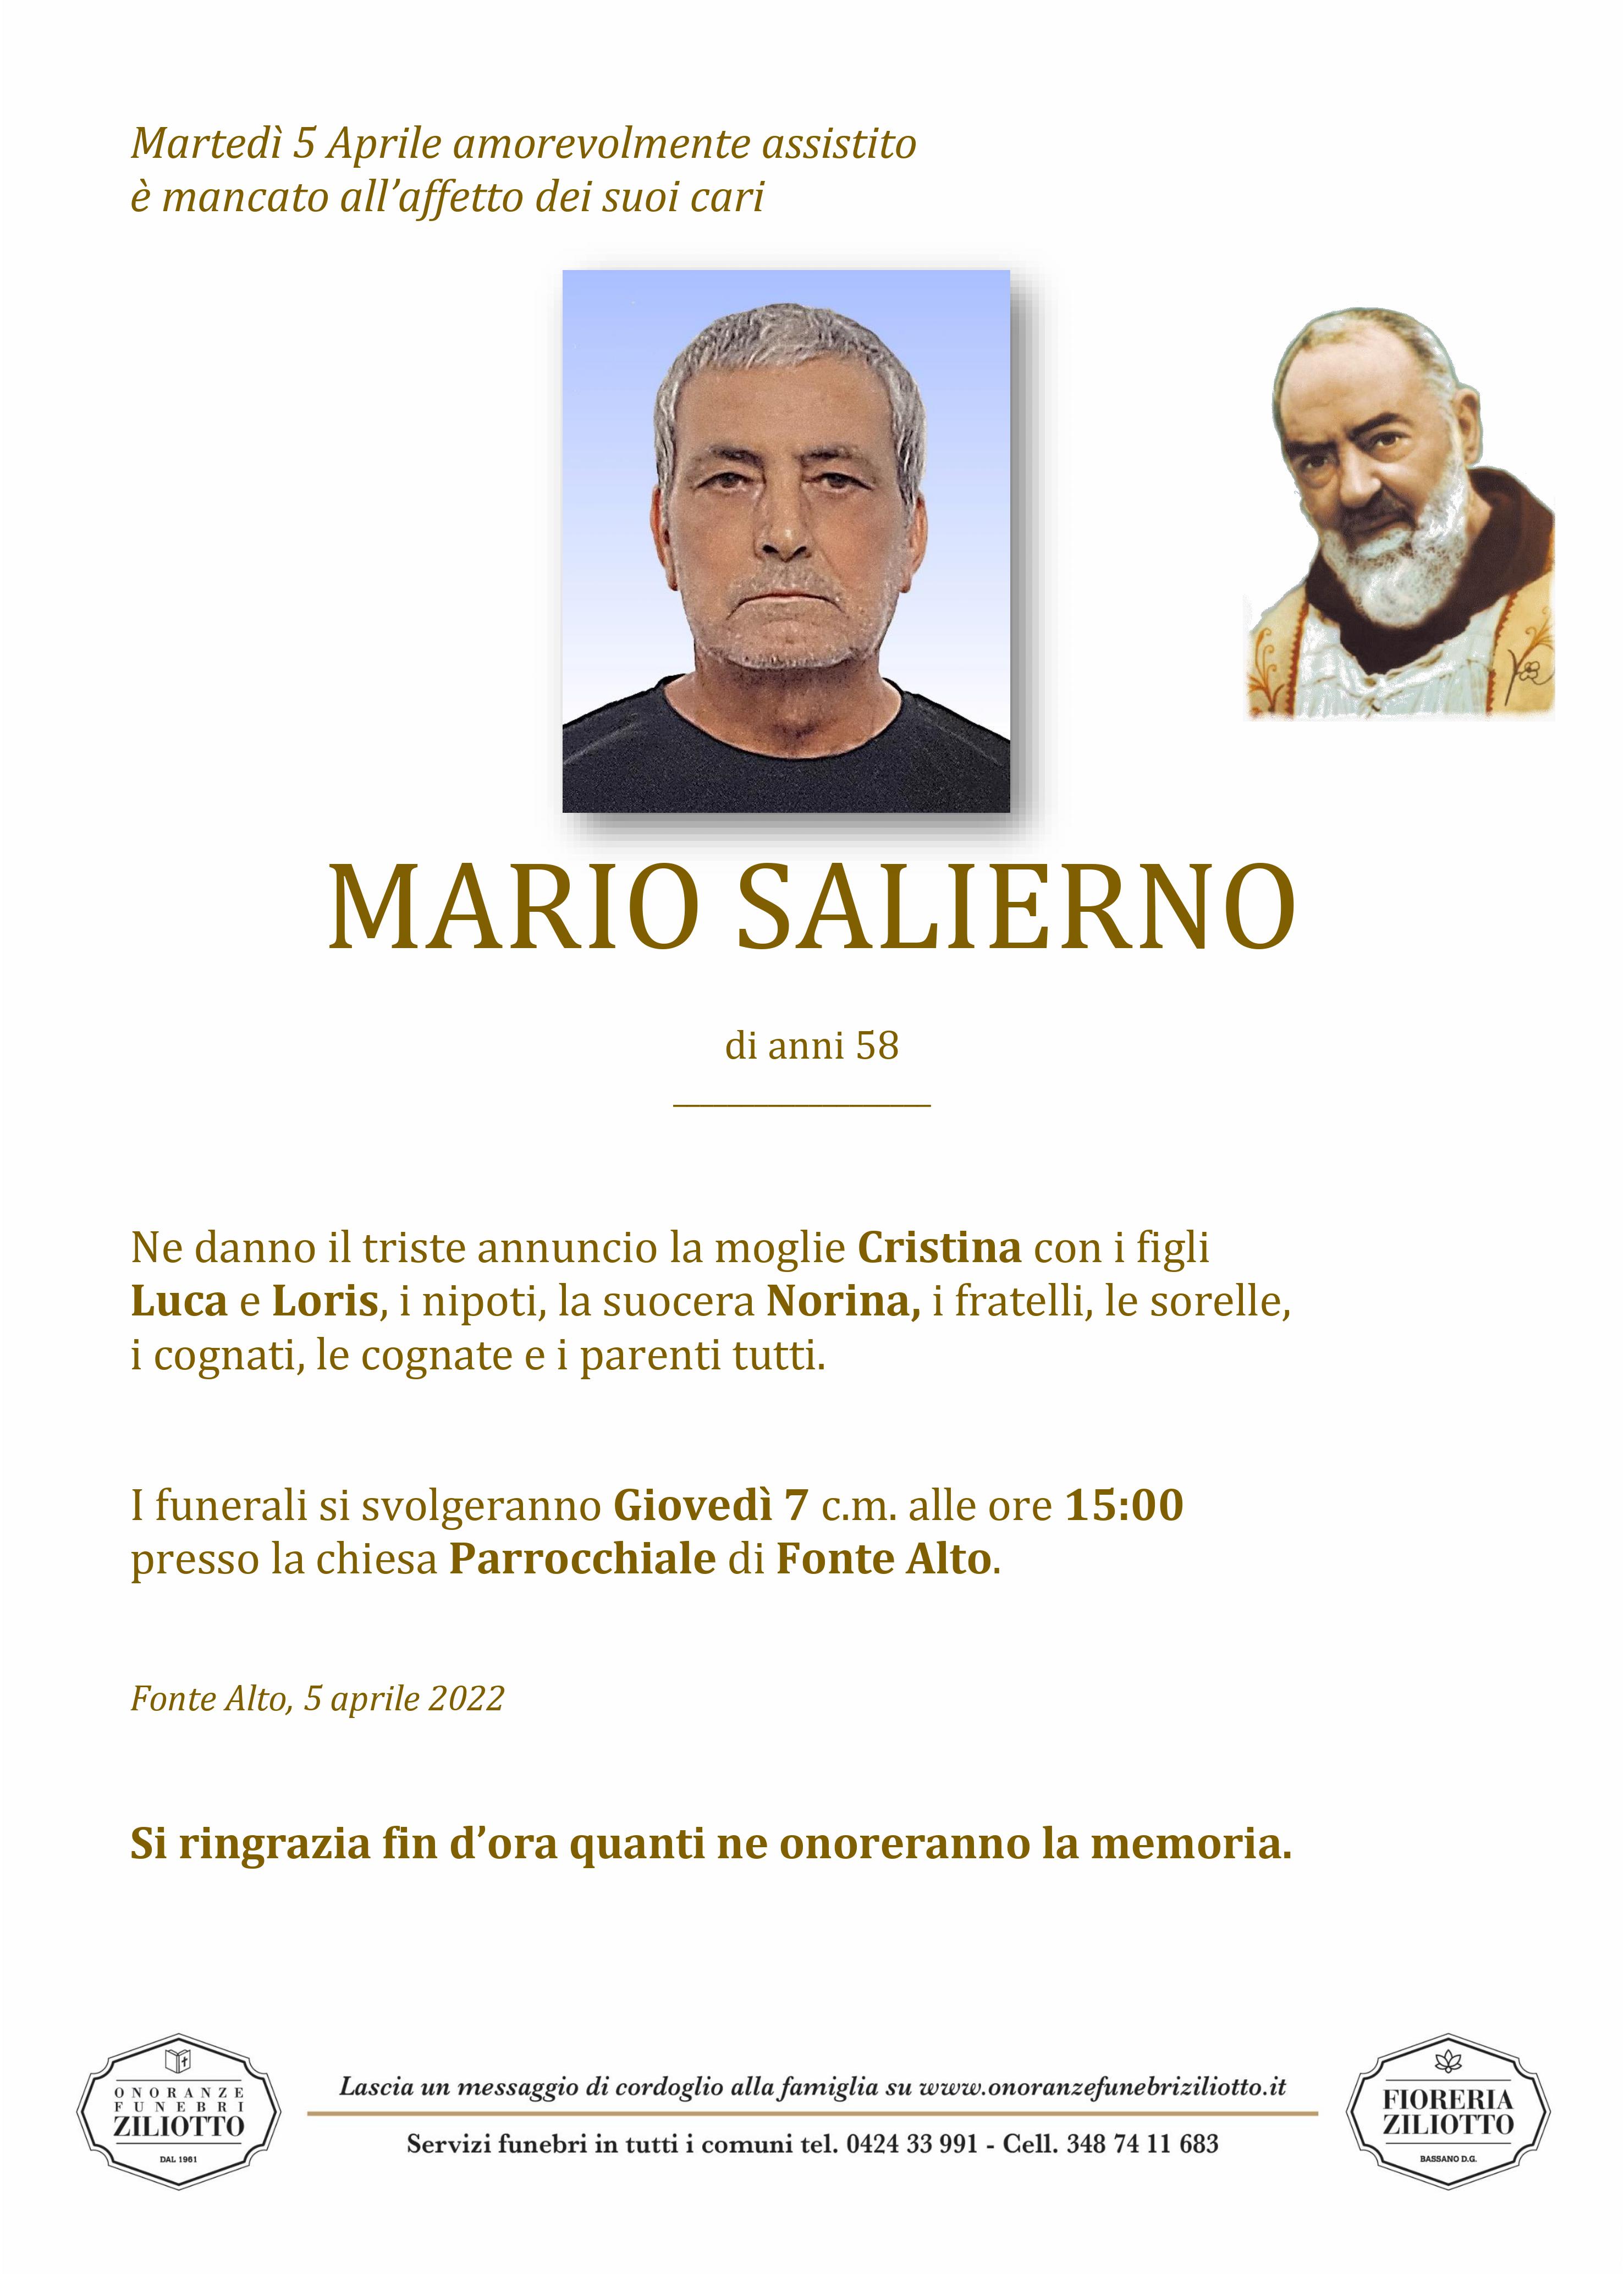 Mario Salierno - 58 anni - Fonte